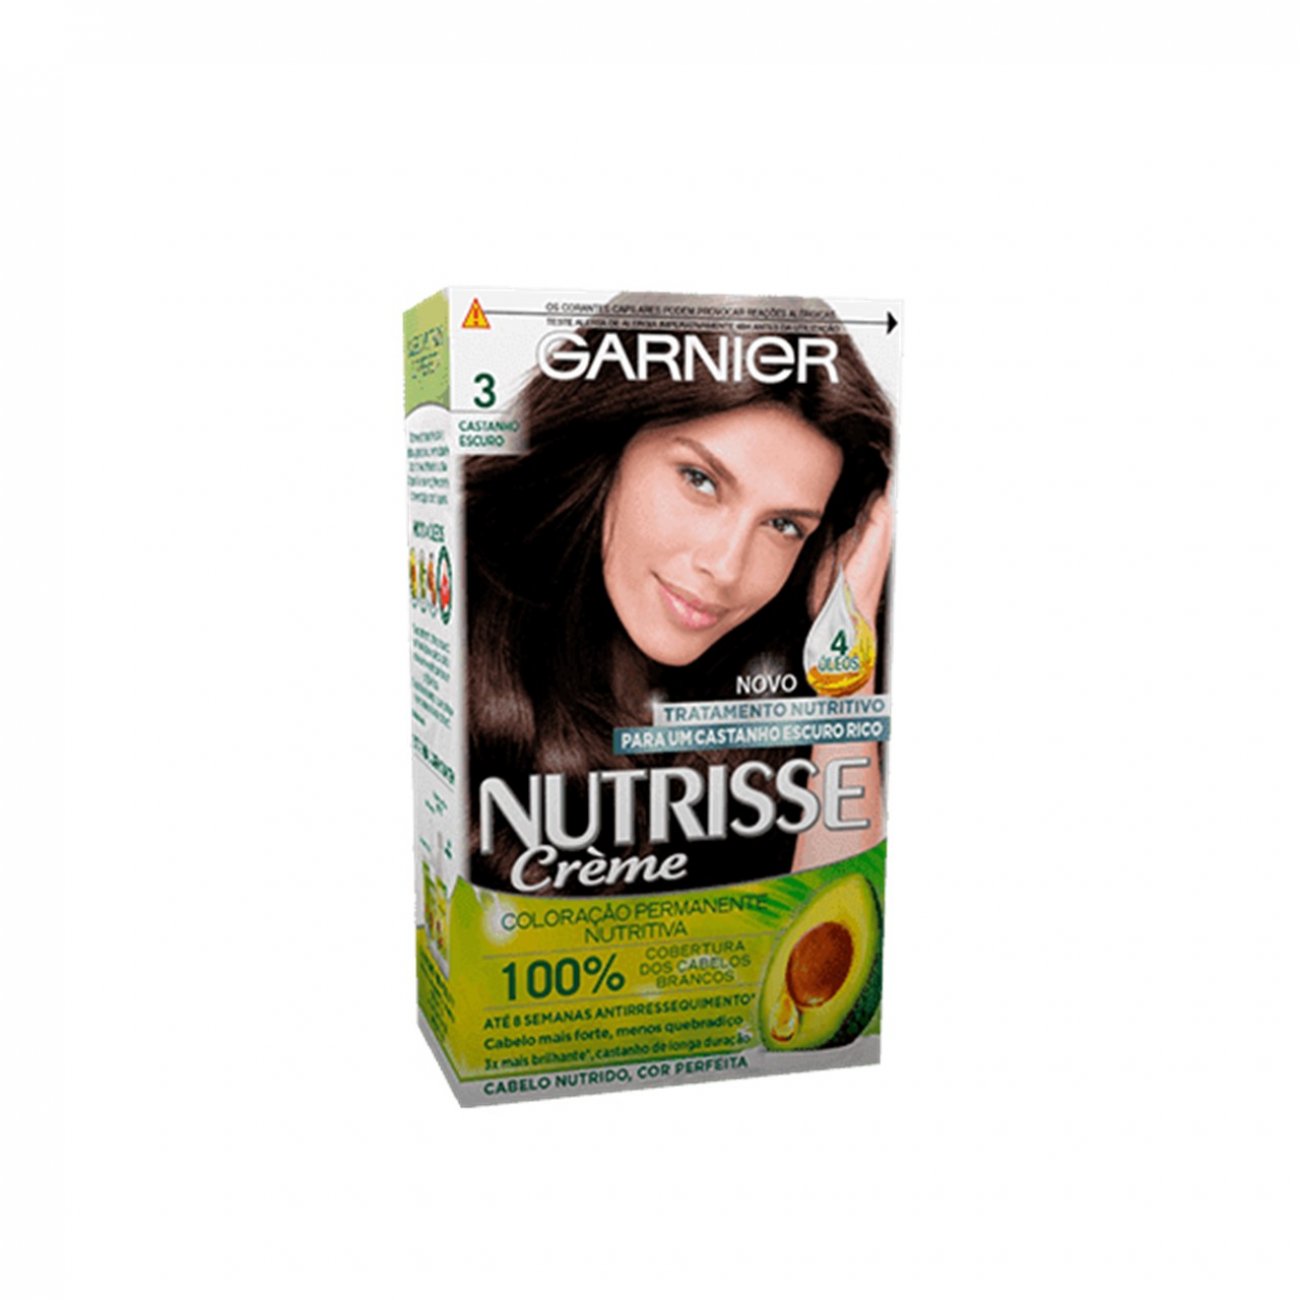 Buy Garnier Nutrisse Crème 3 Darkest Brown Permanent Hair Dye · Belgium